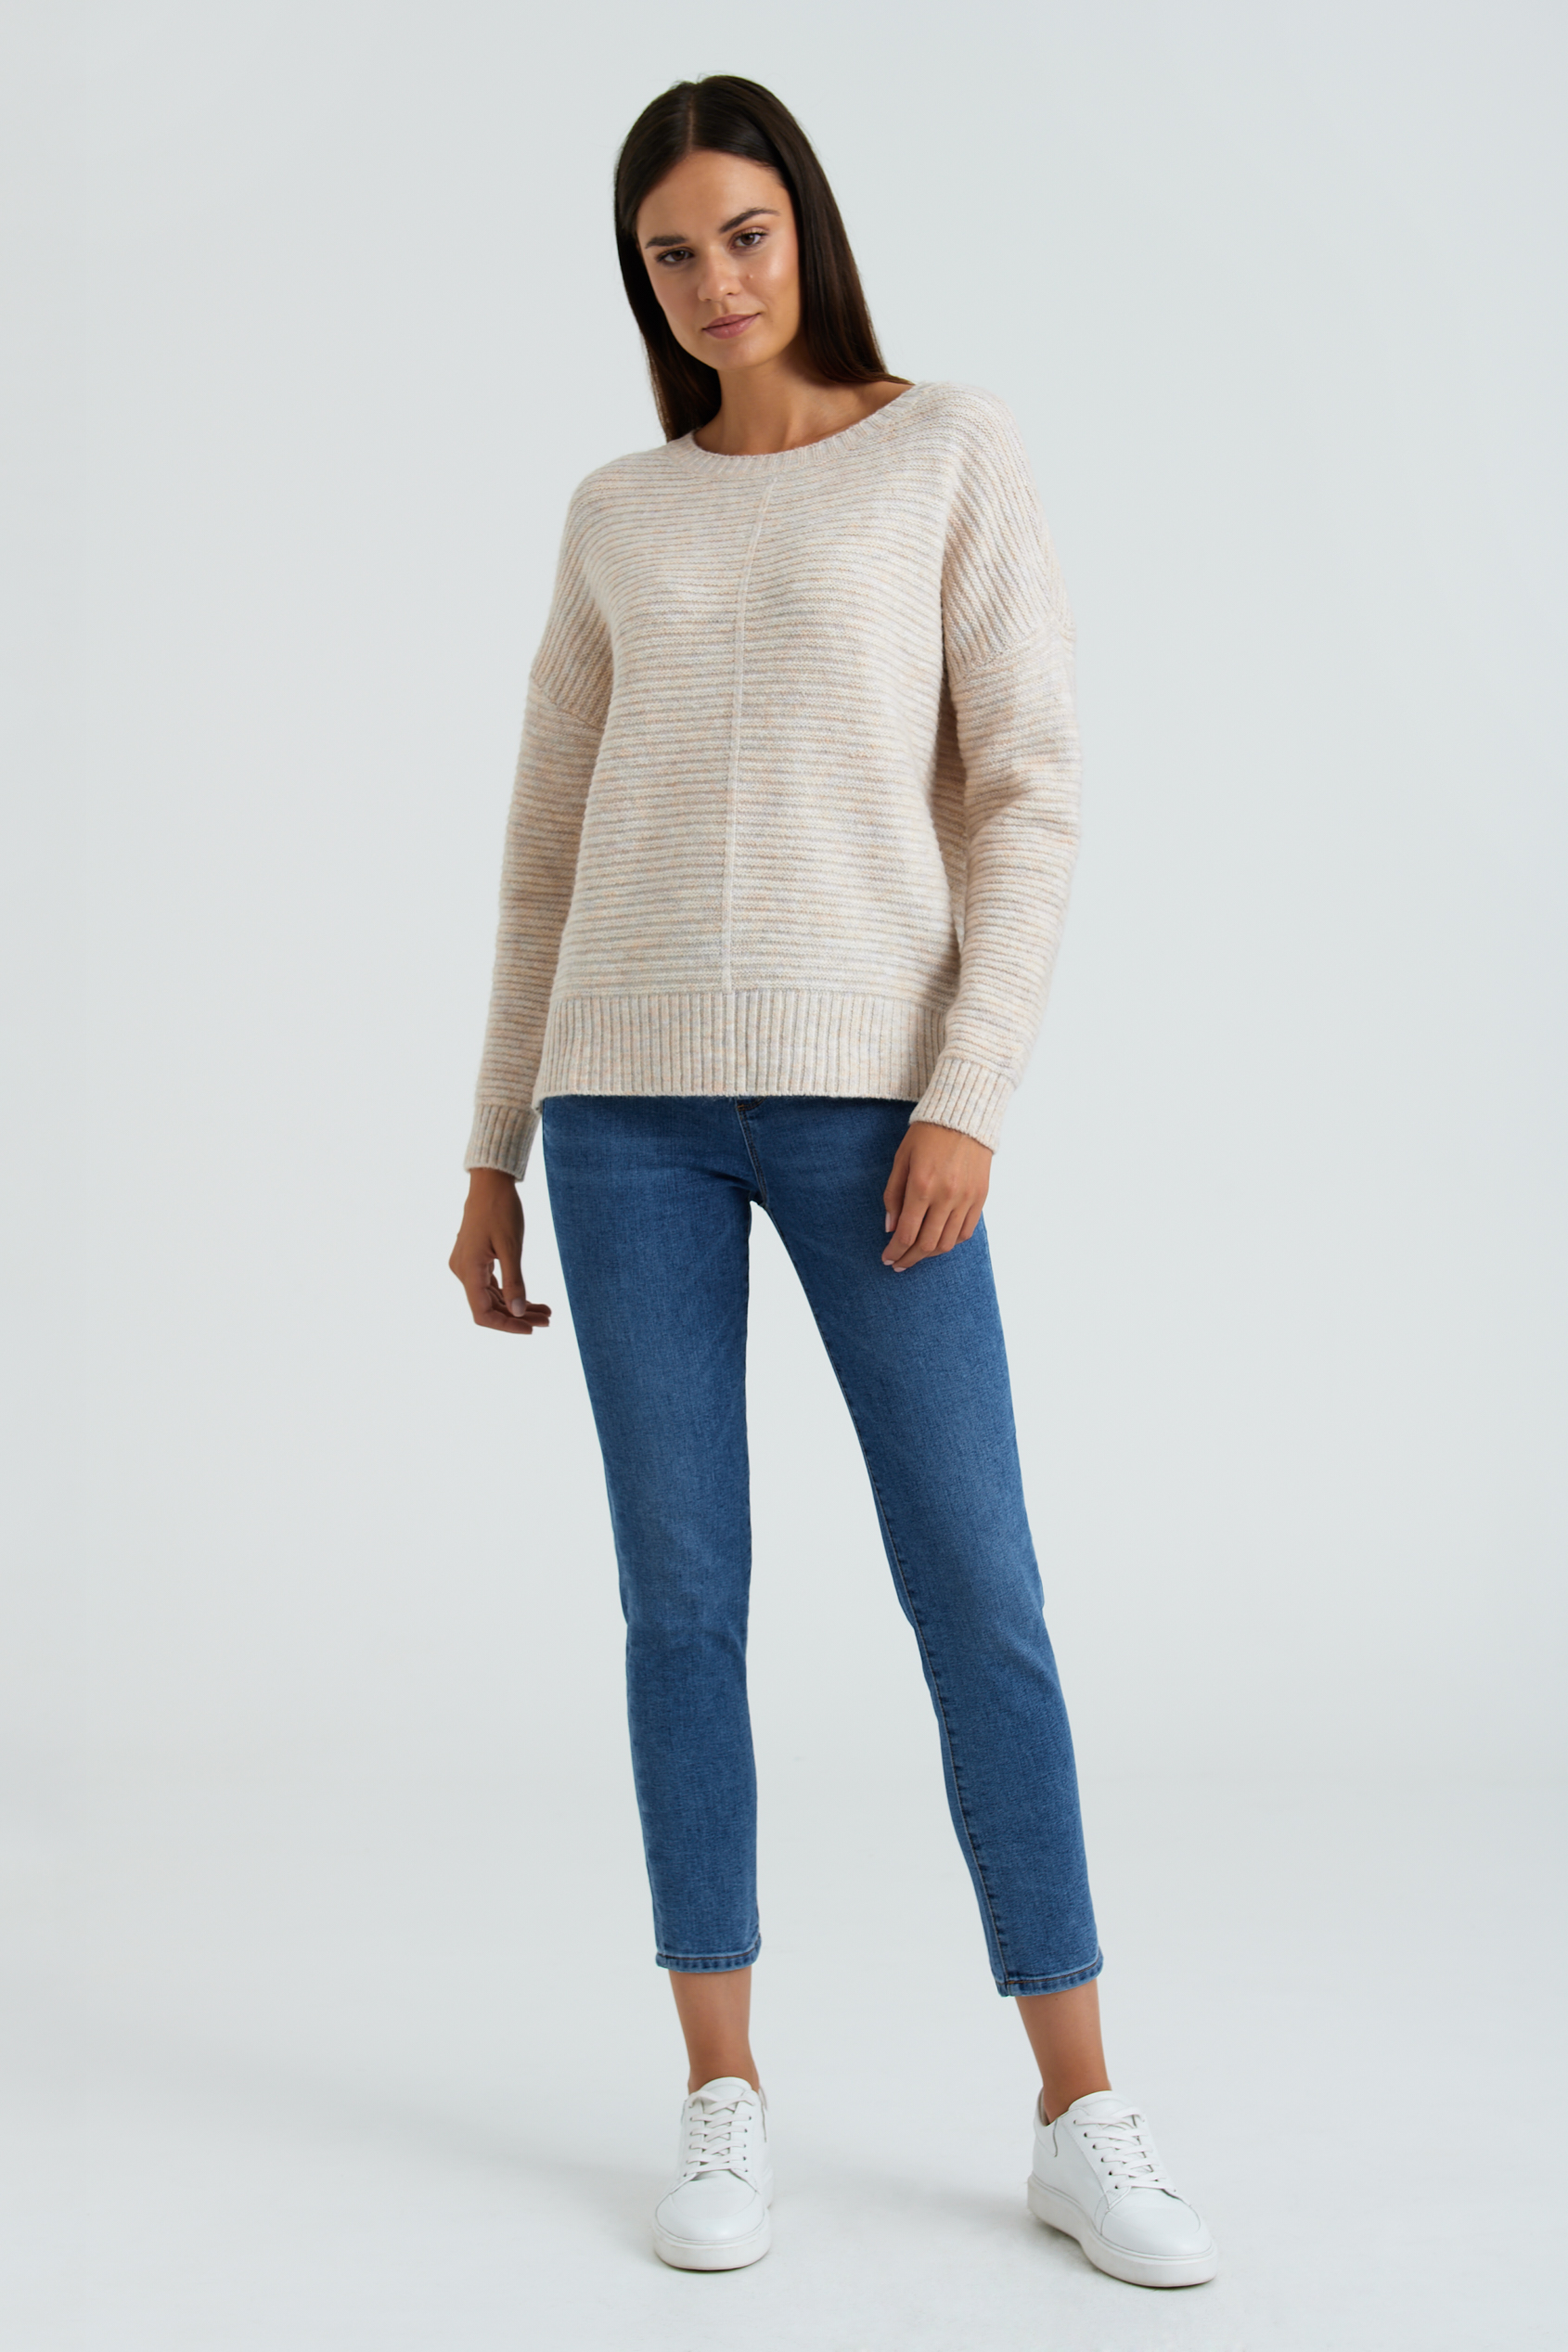 Kremowy sweter z dzianiny strukturalnej w prążek, fason oversize